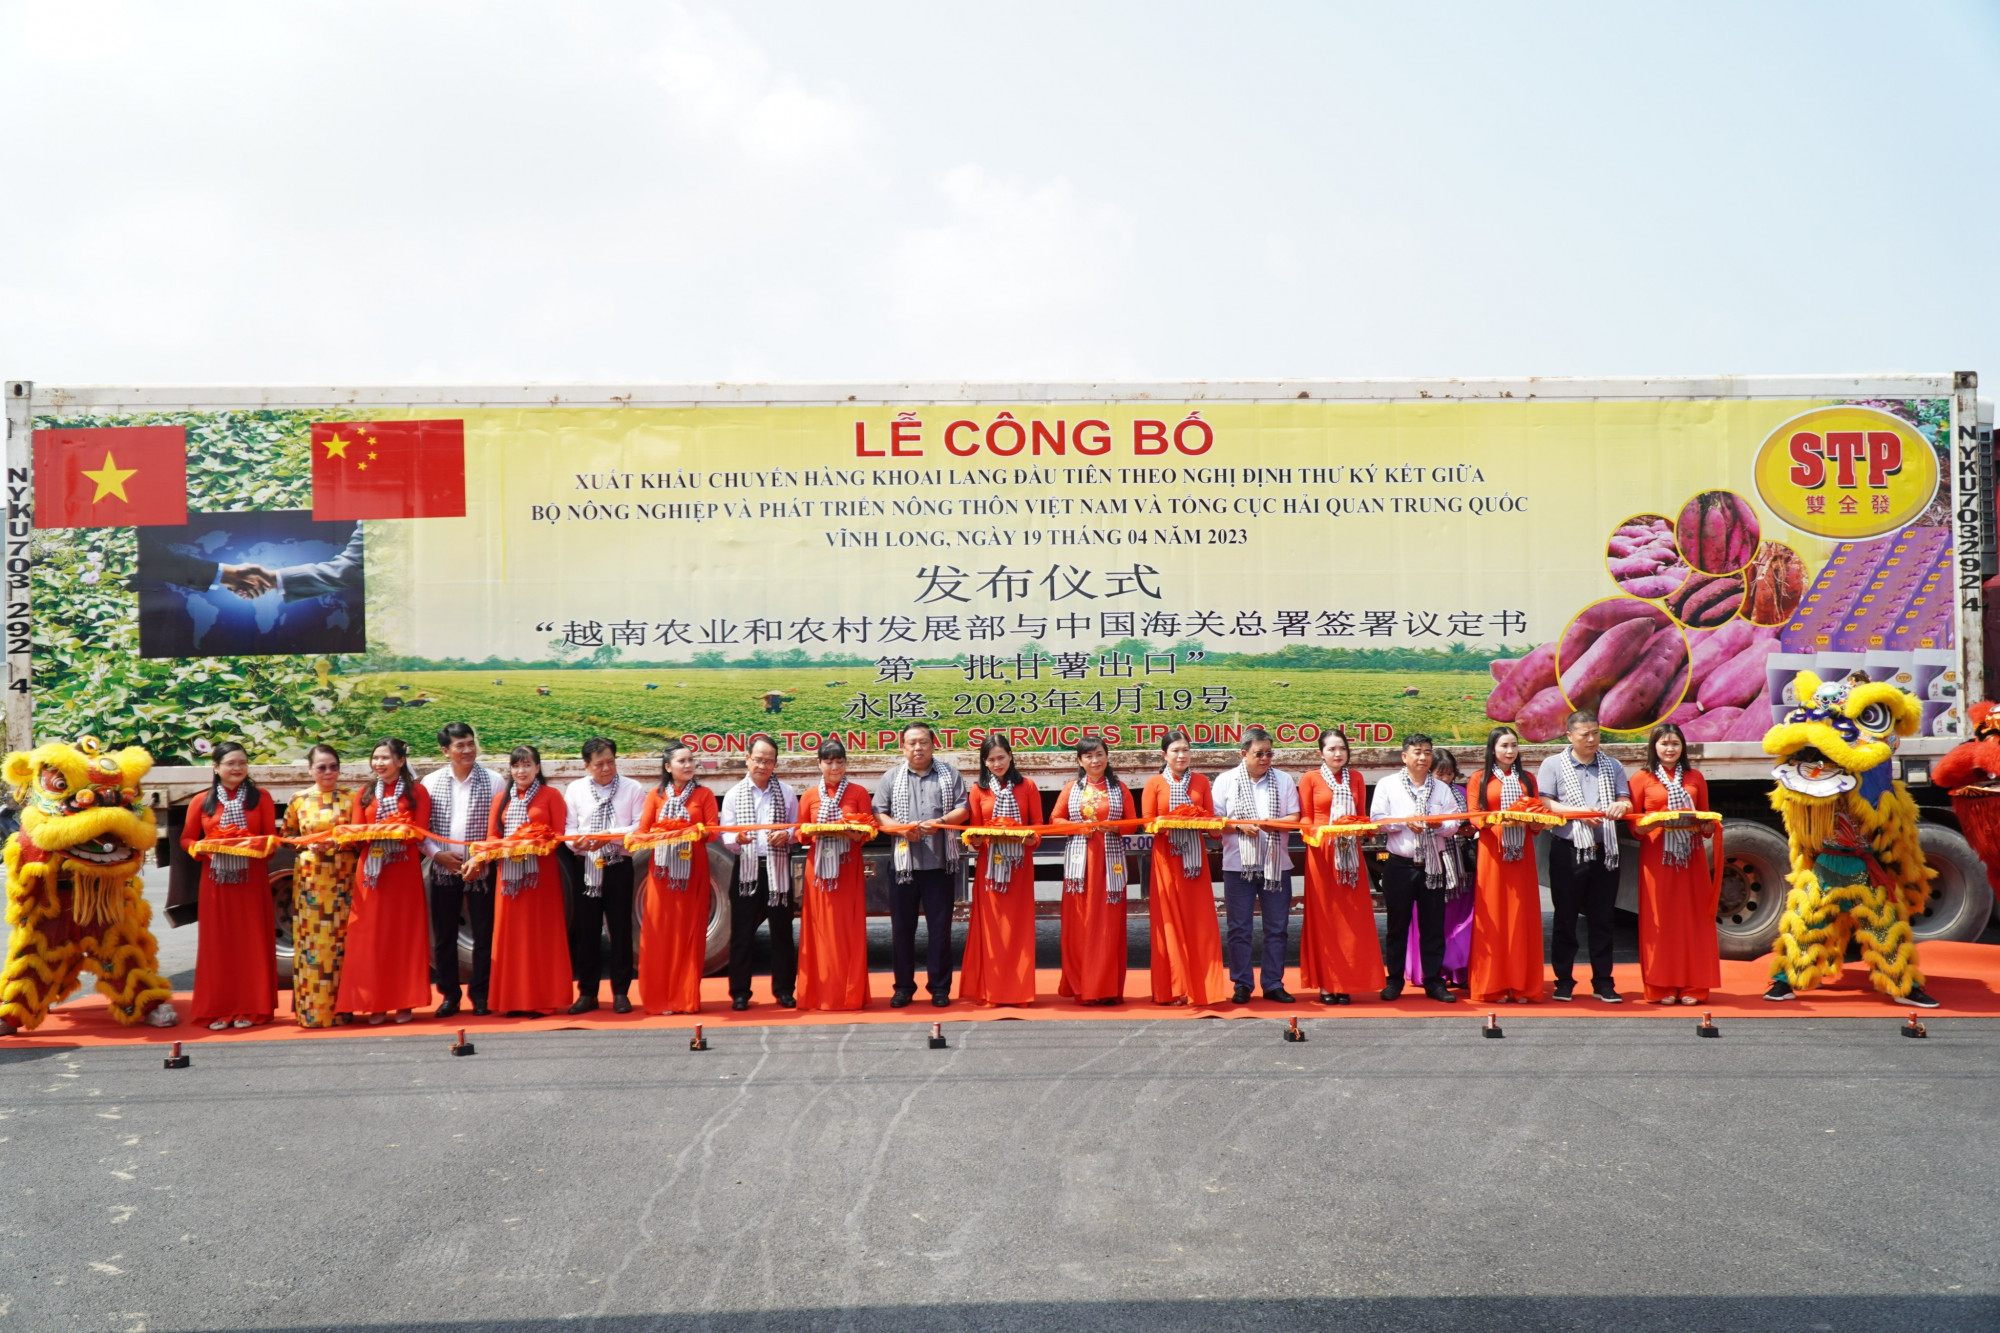 Lễ công bố xuất khẩu khoai lang chính ngạch đầu tiên sang Trung Quốc